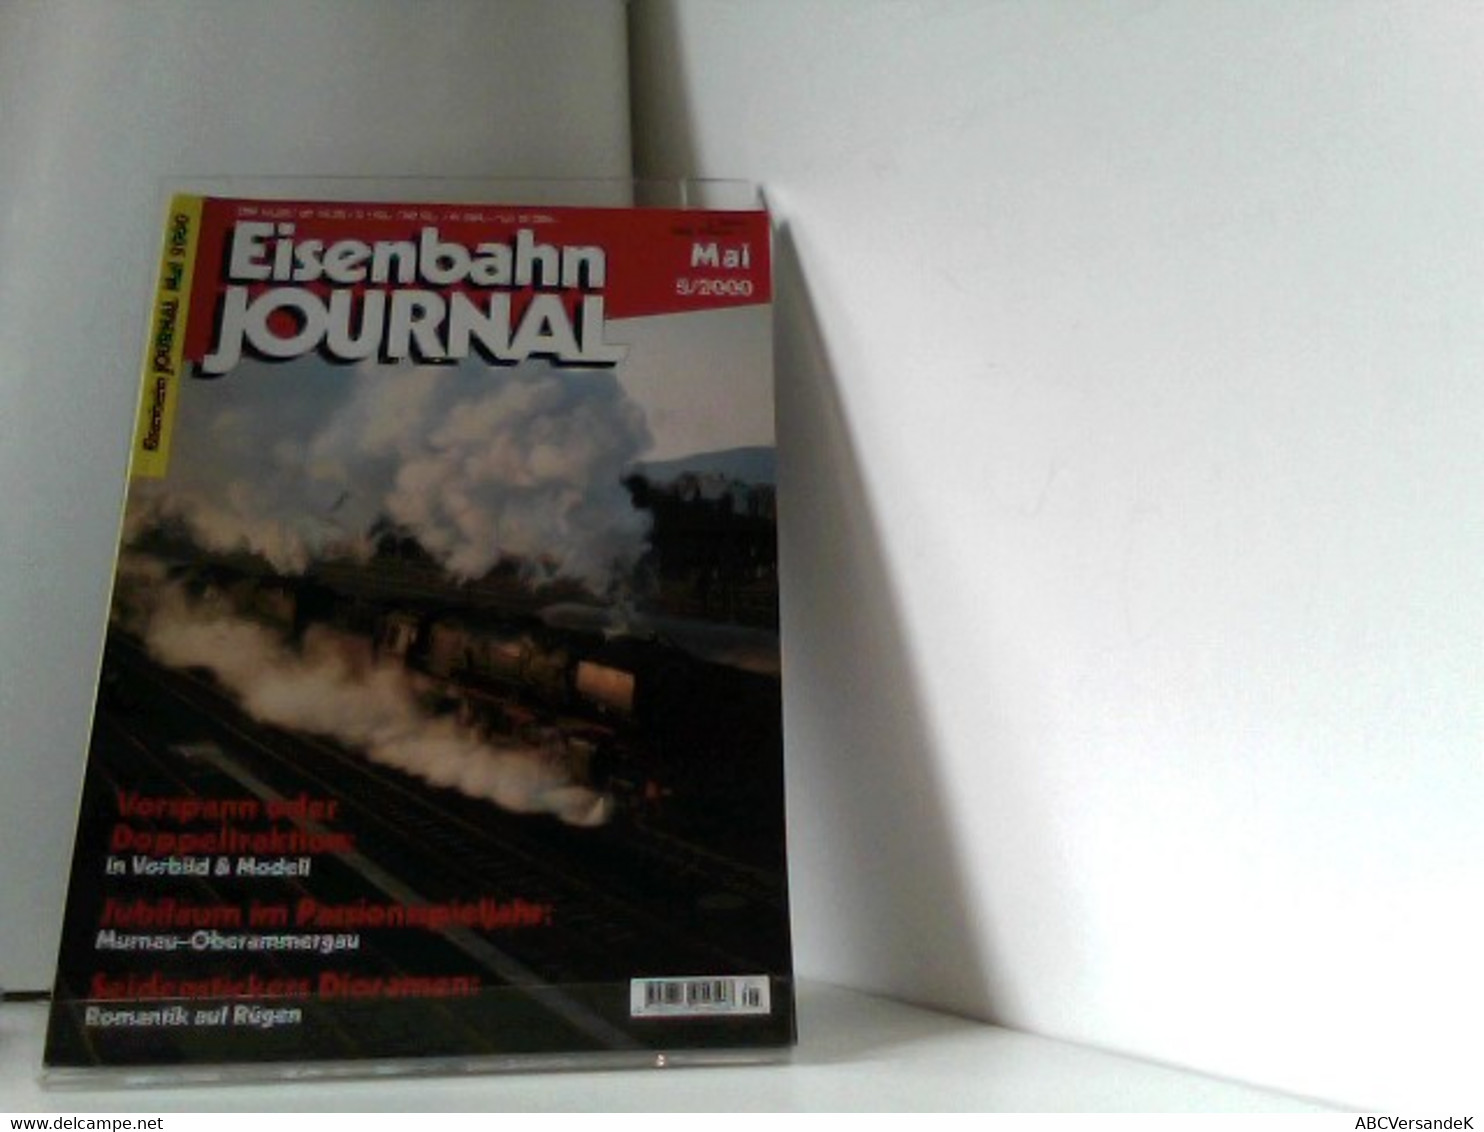 Eisenbahn Journal Mai 5/2000 - Verkehr